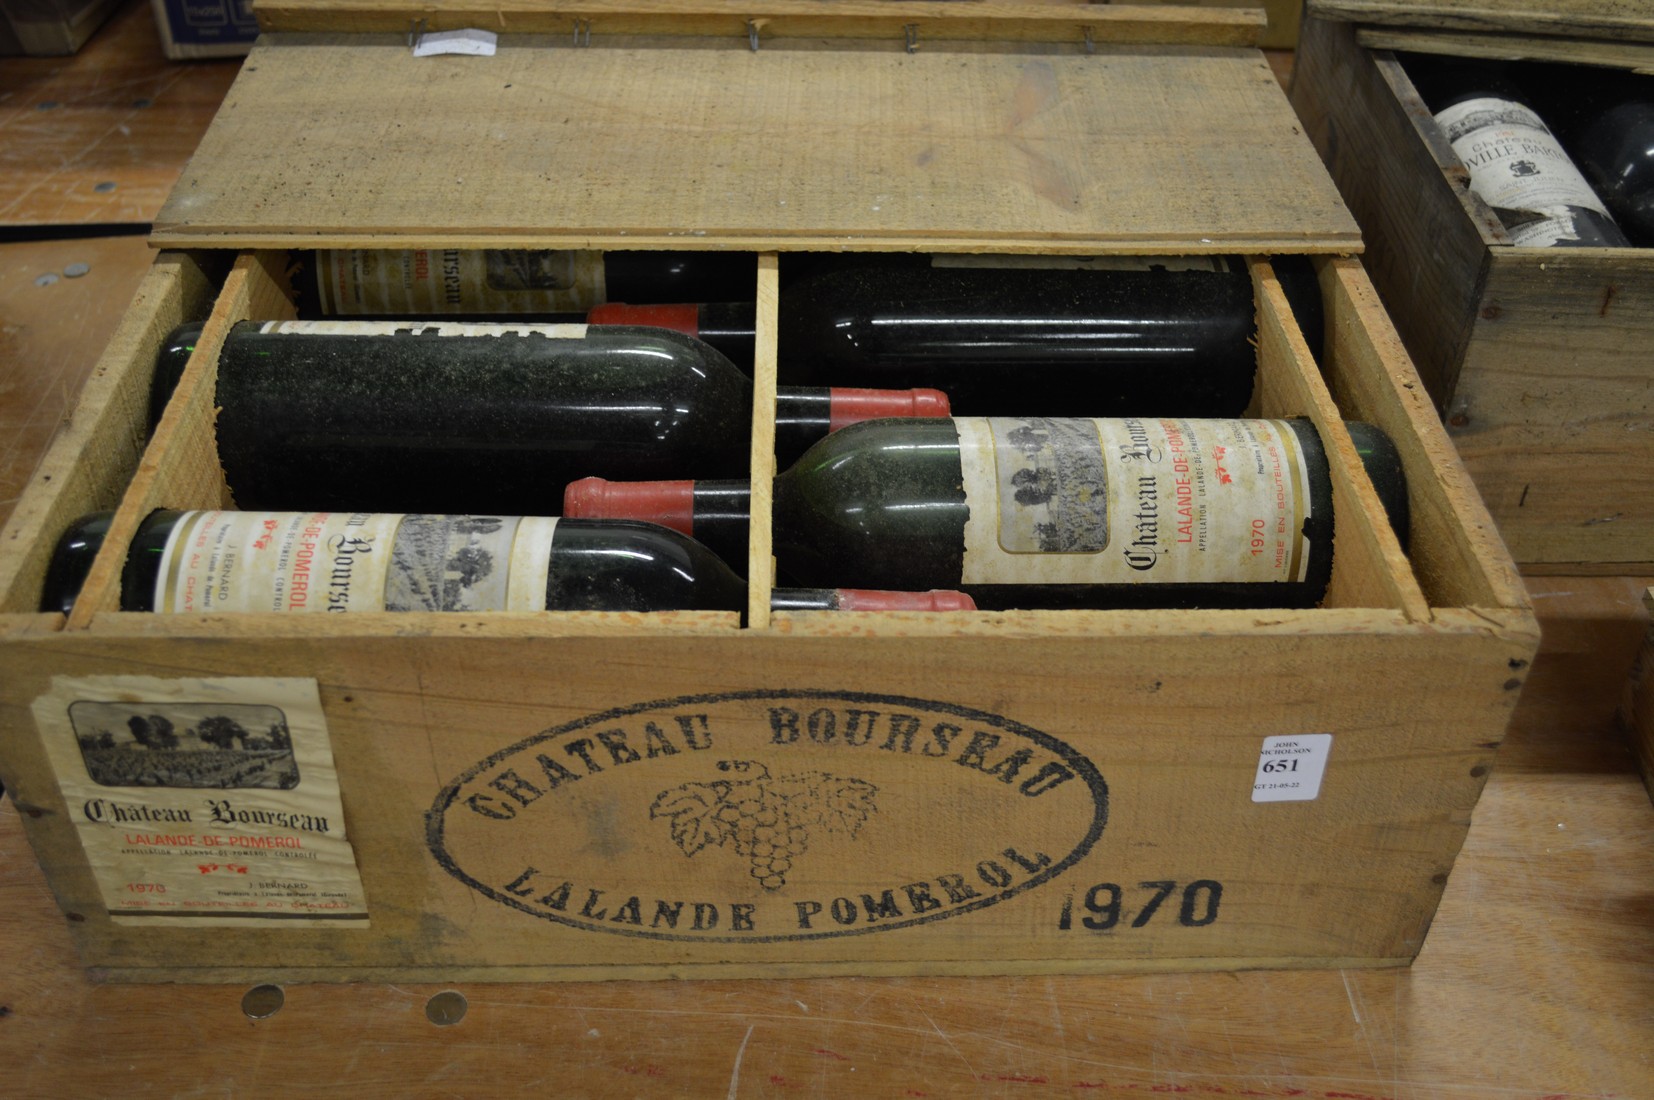 A twelve bottle case of Chateau Bourseau 1970.